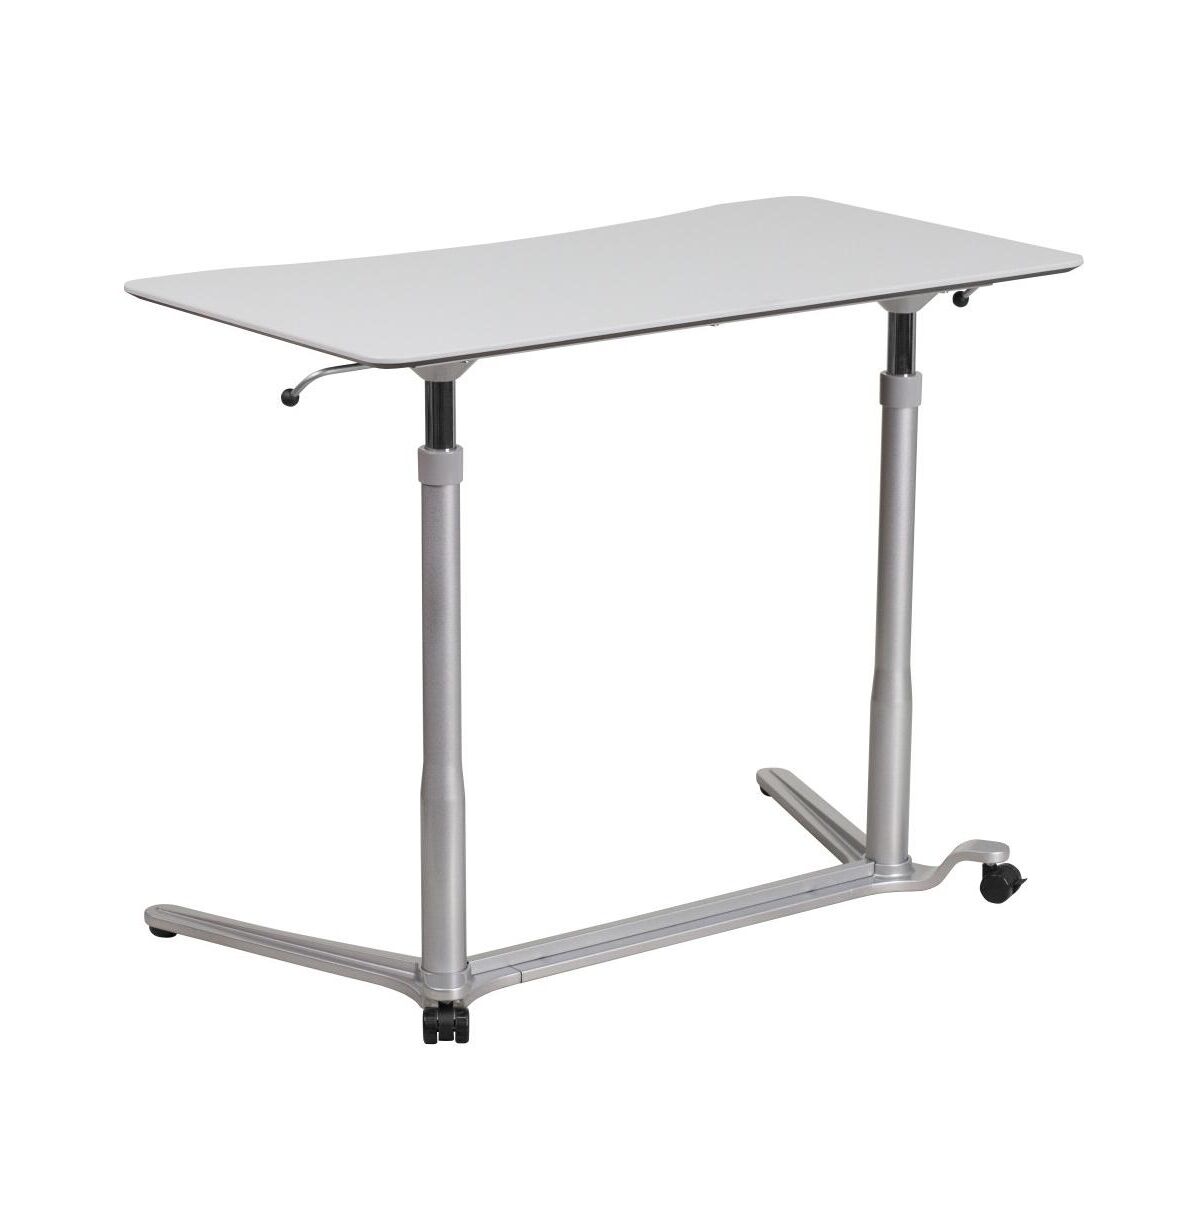 Emma+oliver Sit-Down, Stand-Up Ergonomic Computer Desk - Standing Desk - Light gray